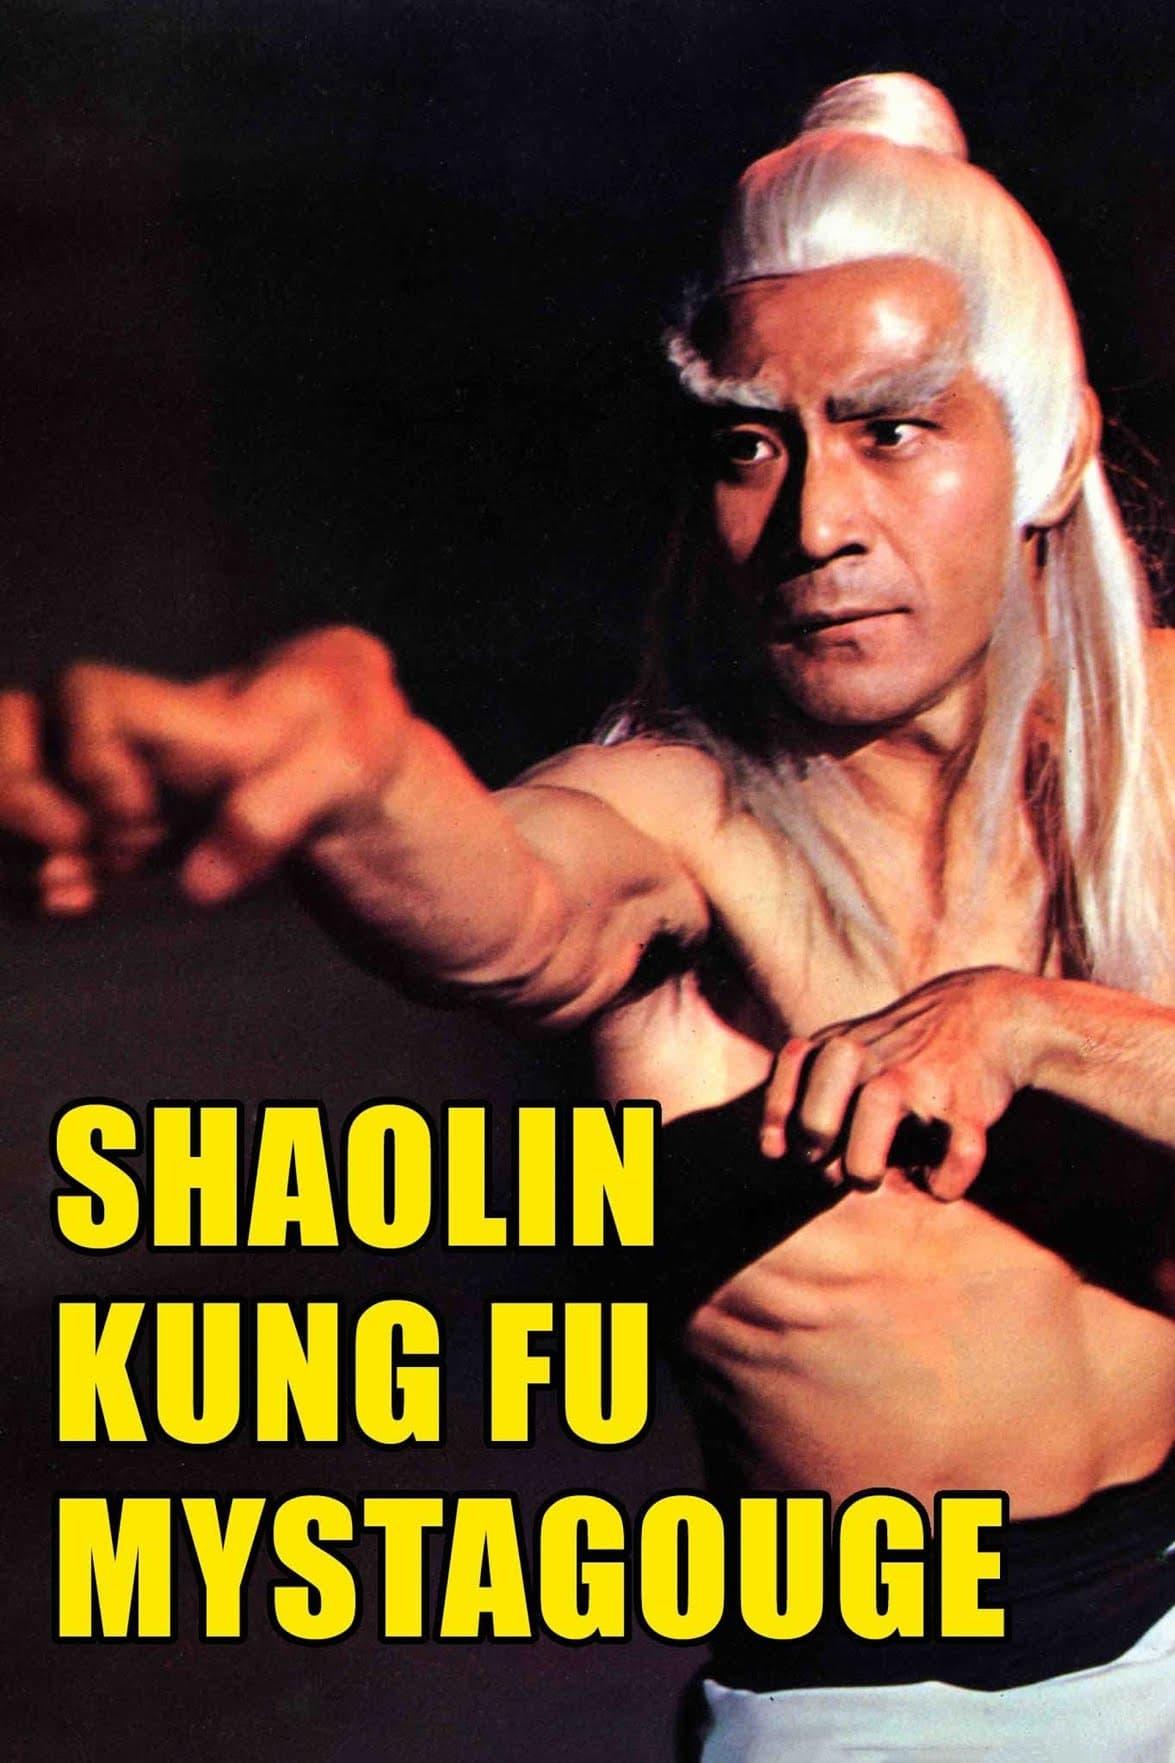 Shaolin Kung-Fu Mystagogue poster